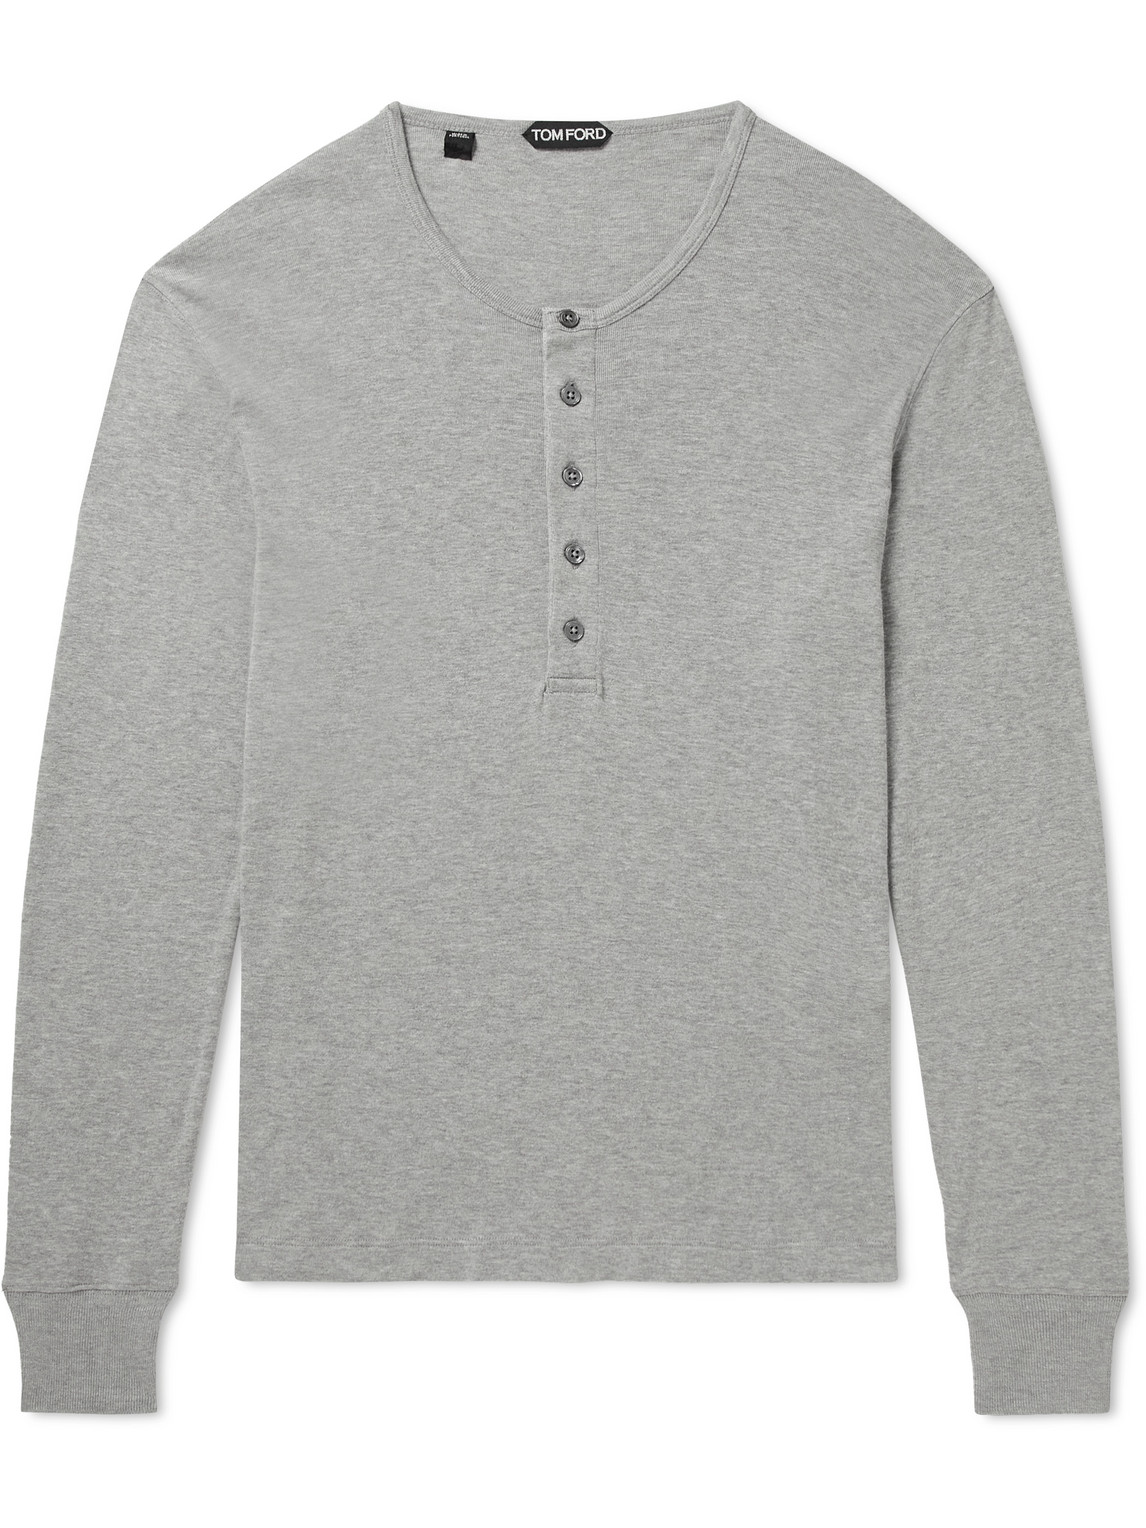 Modal and Cotton-Blend Jersey Henley T-Shirt